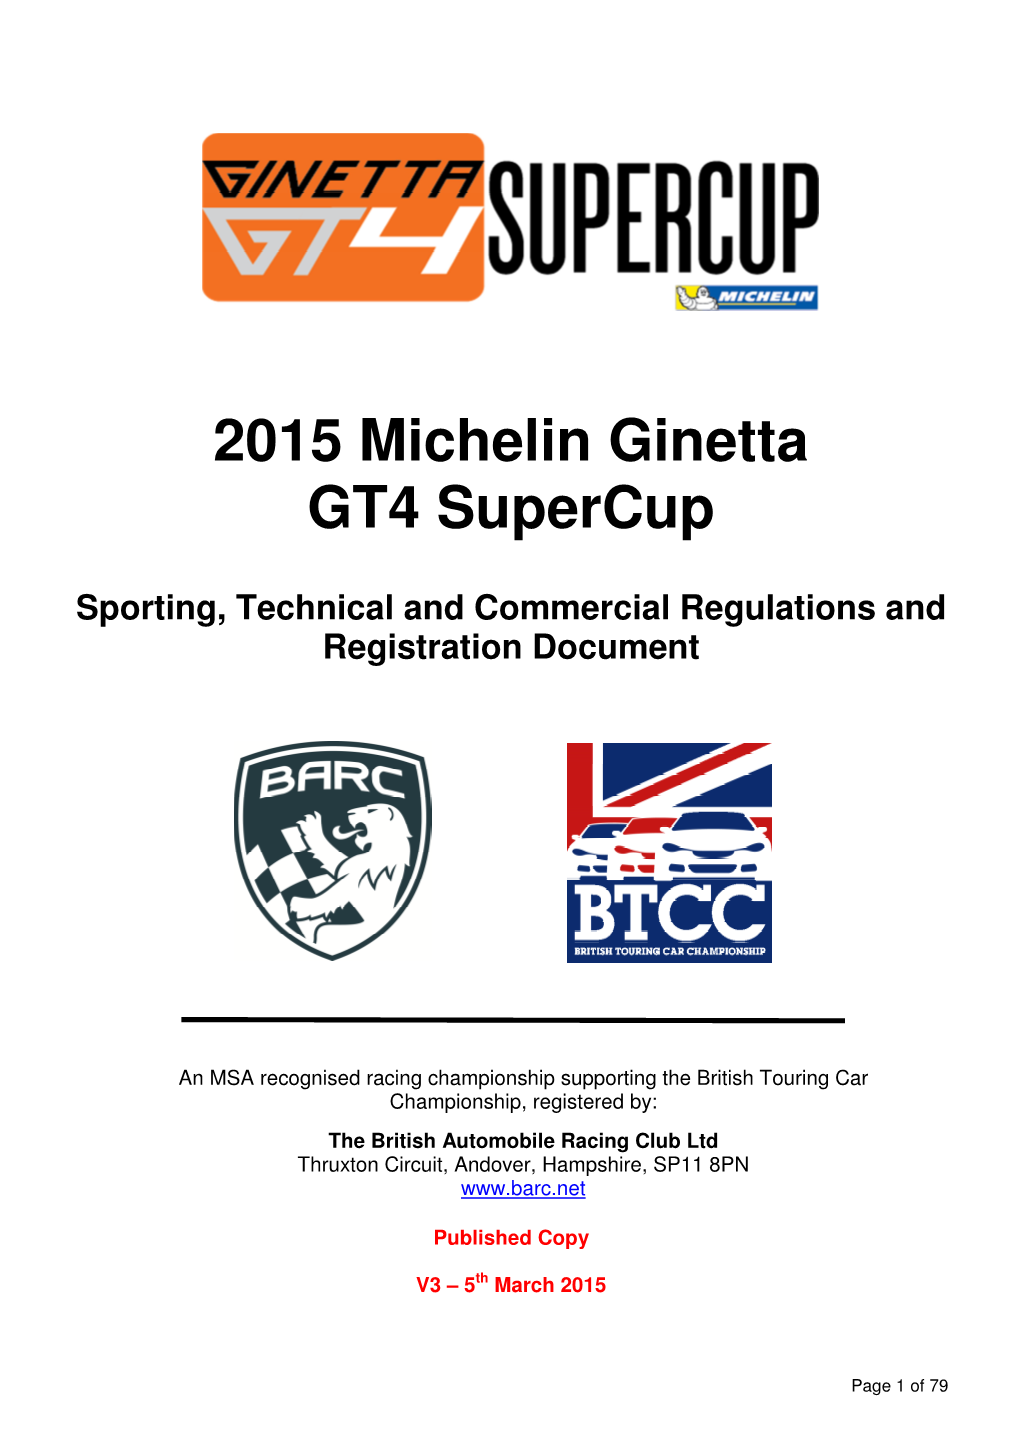 2015 Michelin Ginetta GT4 Supercup